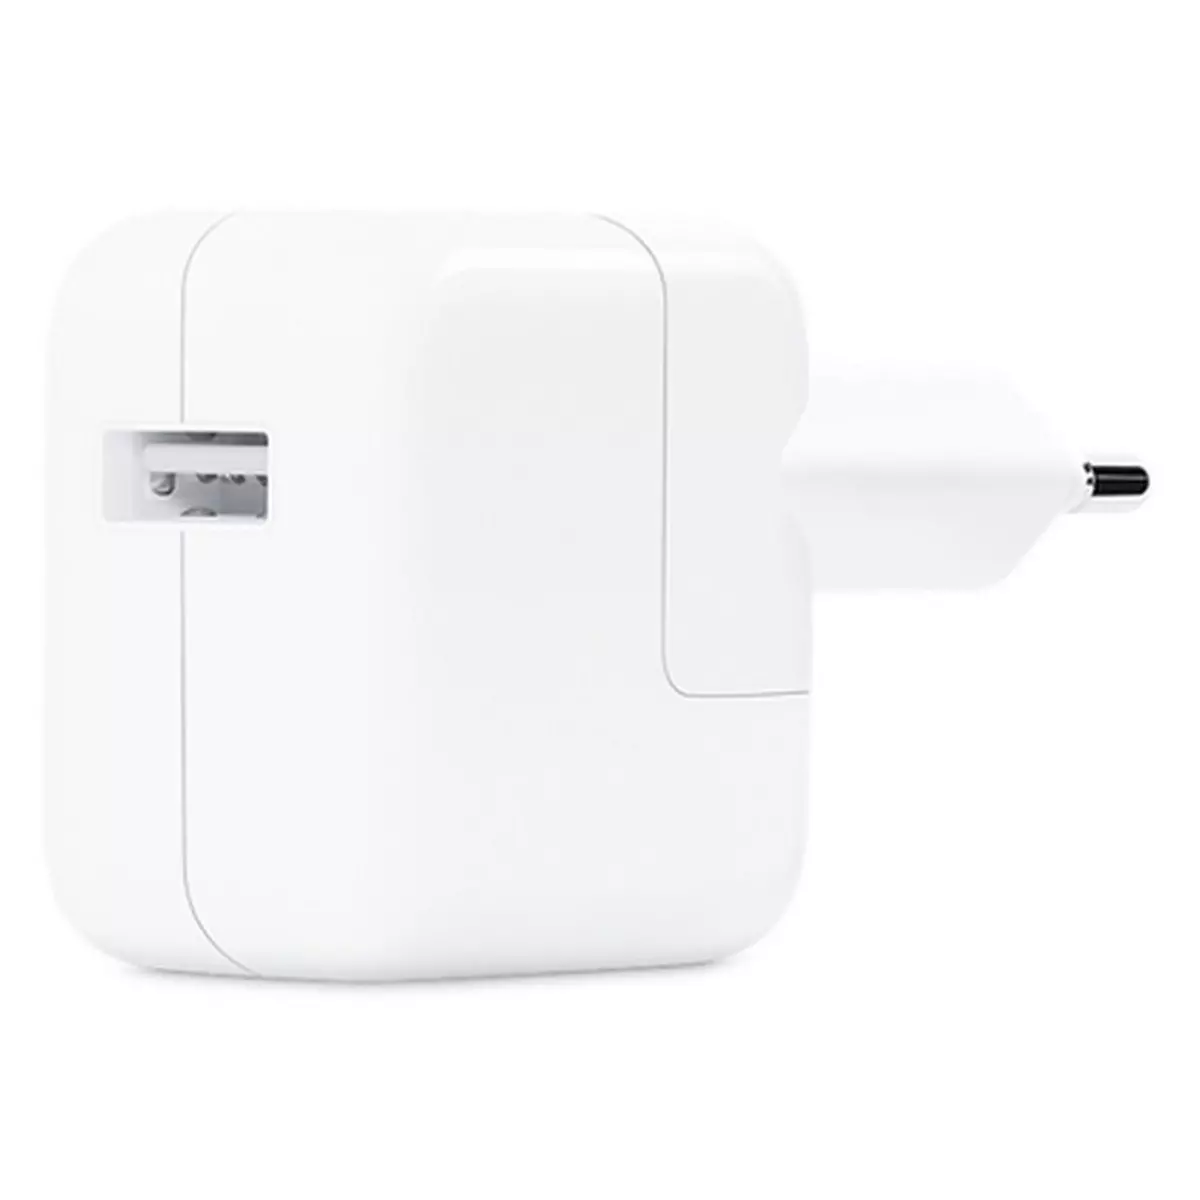 APPLE Chargeur secteur /USB pour iPhone, iPad, iPod - Blanc pas cher 